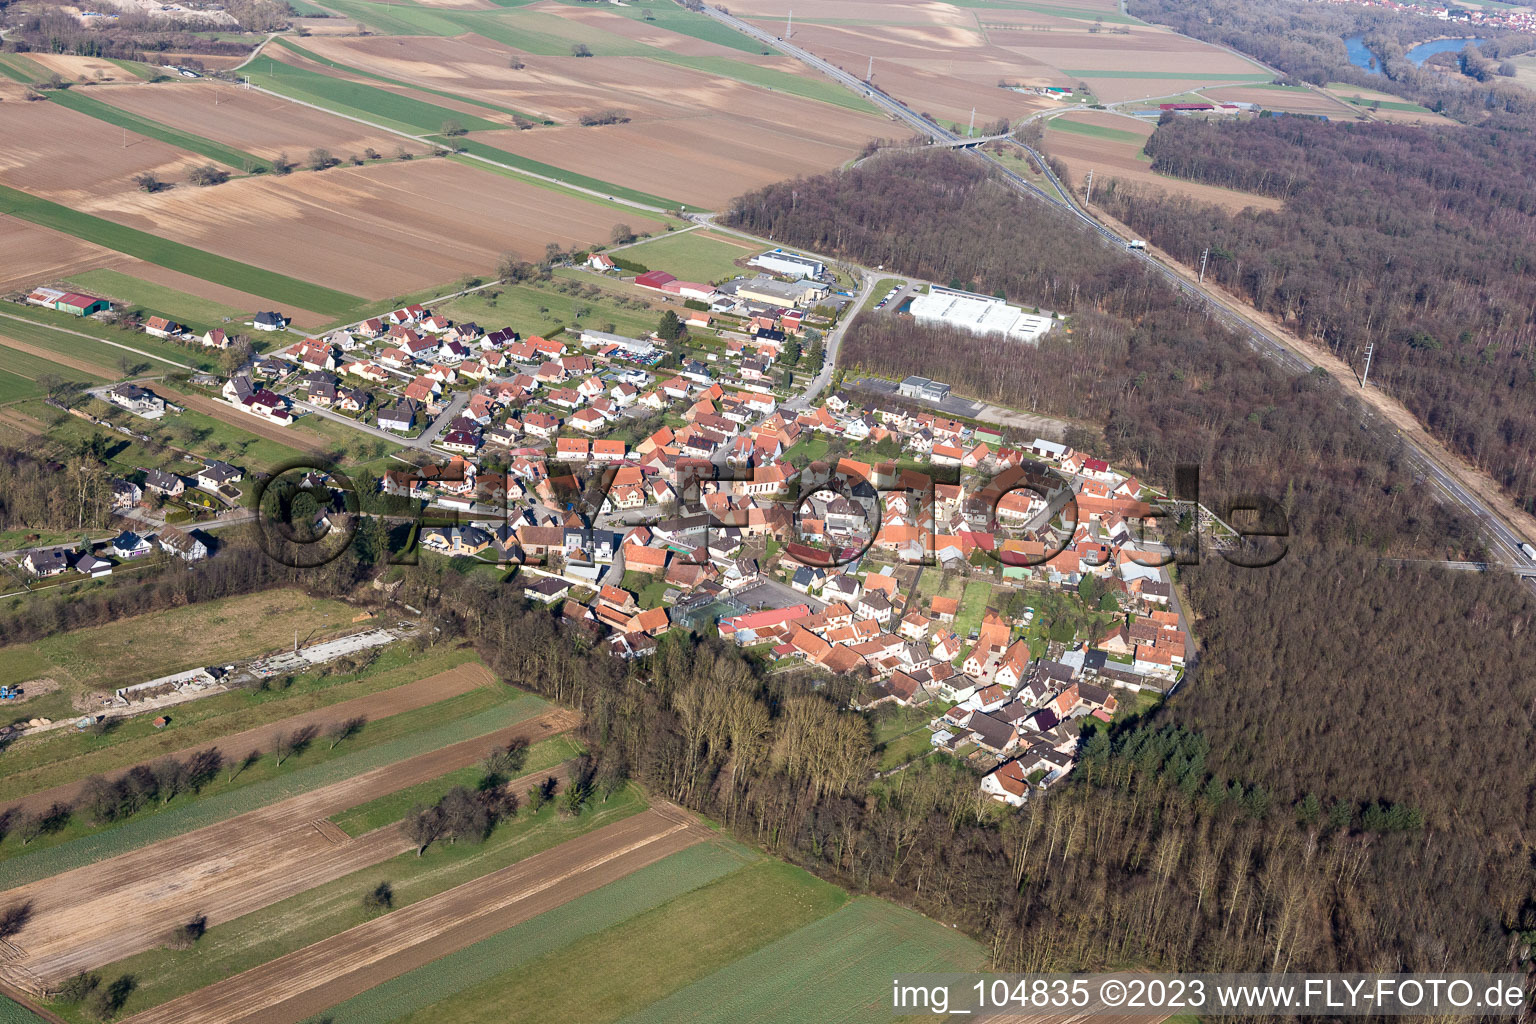 Schaffhouse-près-Seltz im Bundesland Bas-Rhin, Frankreich von der Drohne aus gesehen